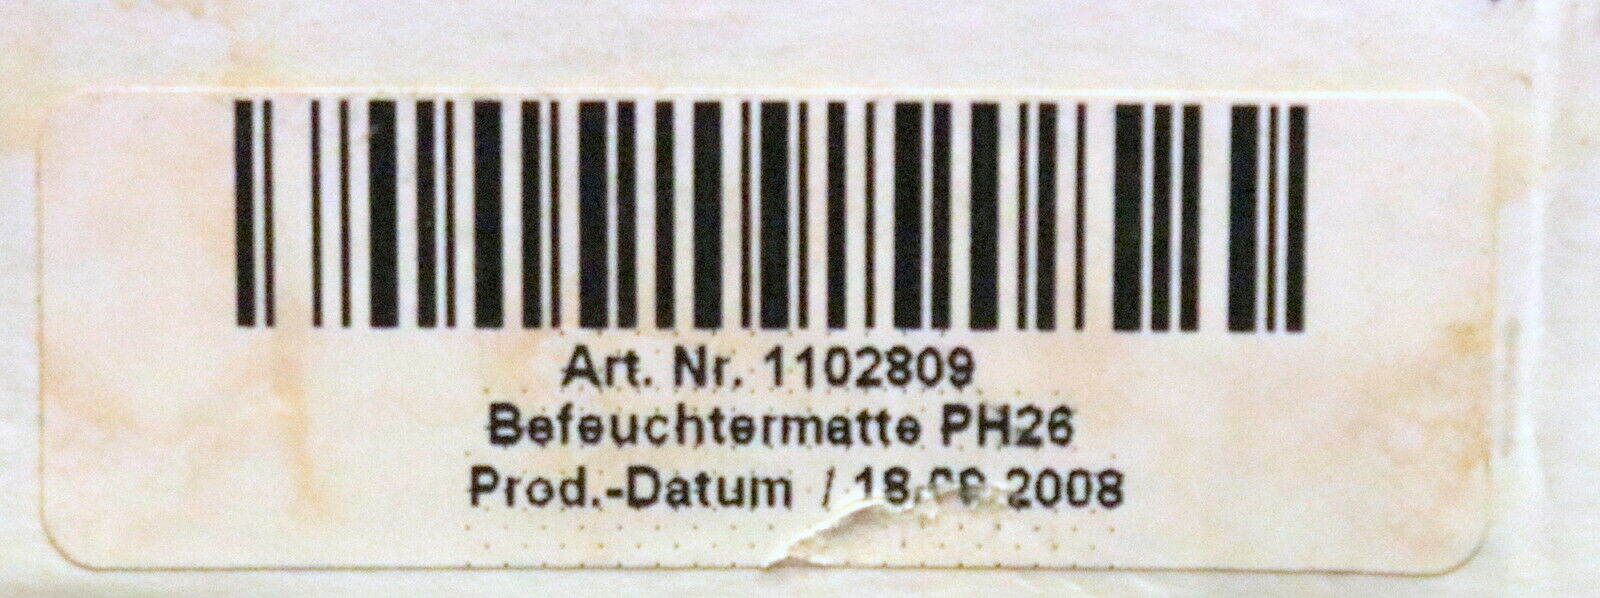 CONDAIR Befeuchtermatte für Defensor PH26 Art.Nr. 1102809 Produktionjahr 2008